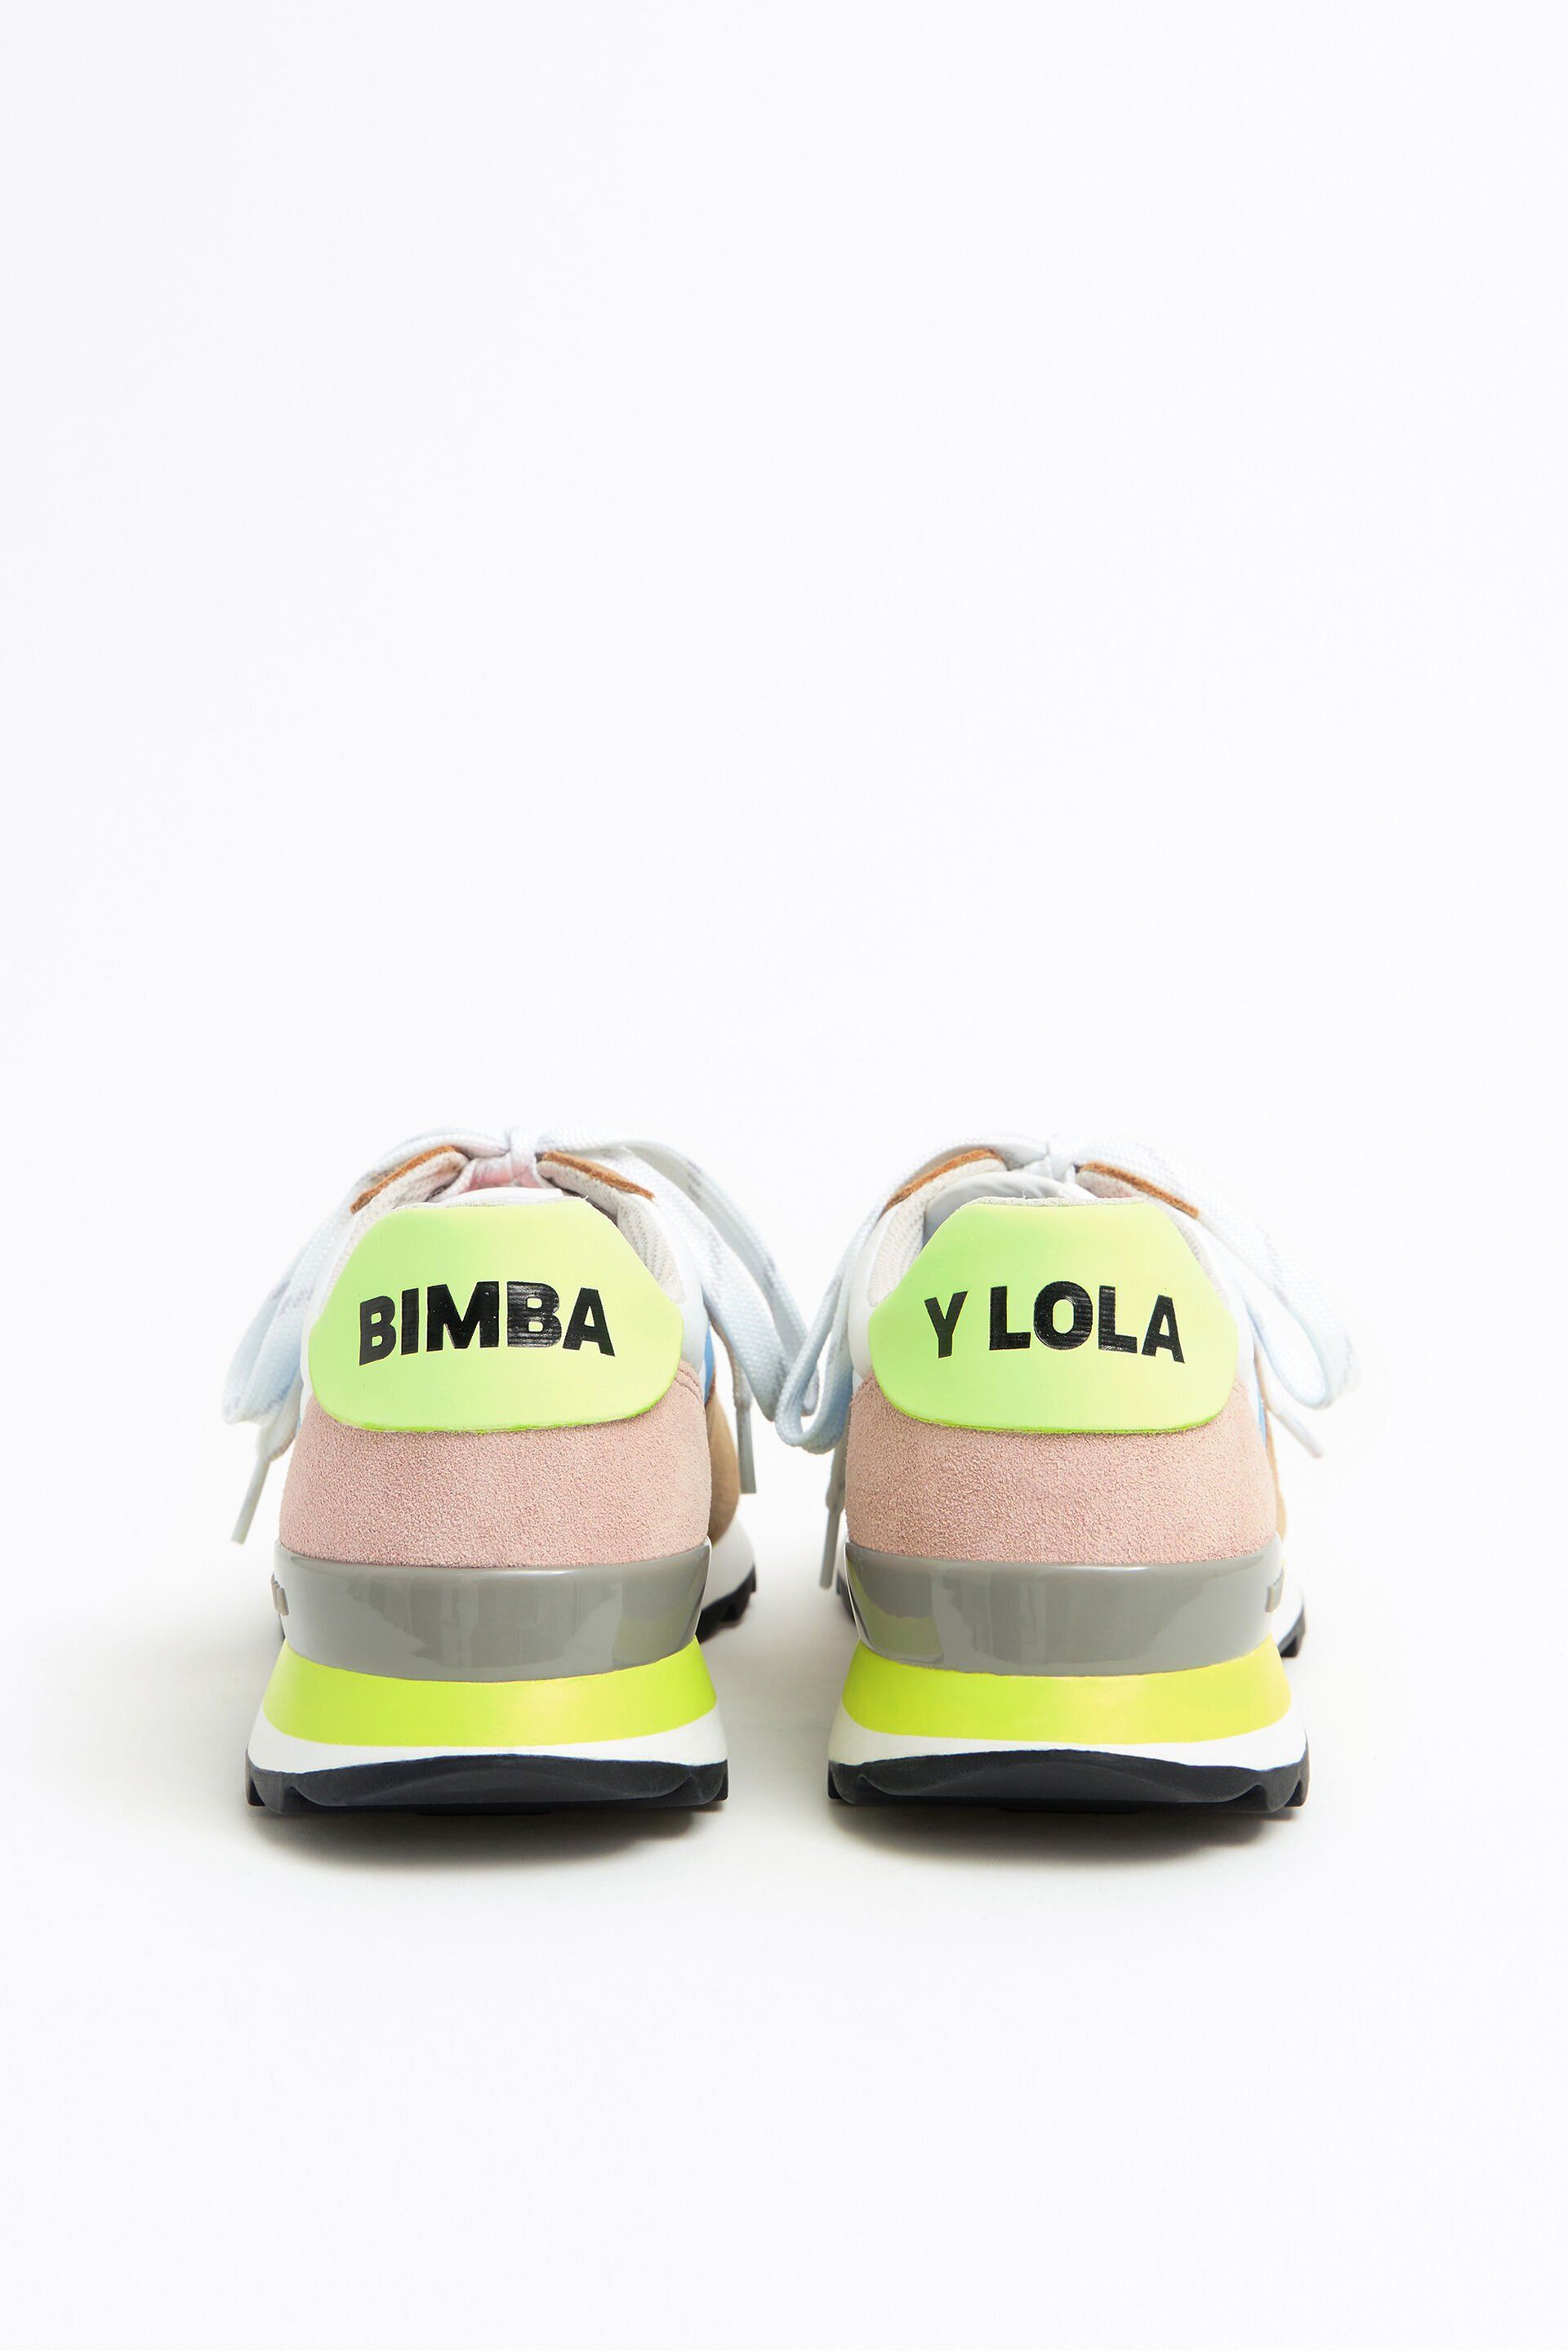 Bimba y Lola rebaja estas zapatillas pastel a un precio imbatible